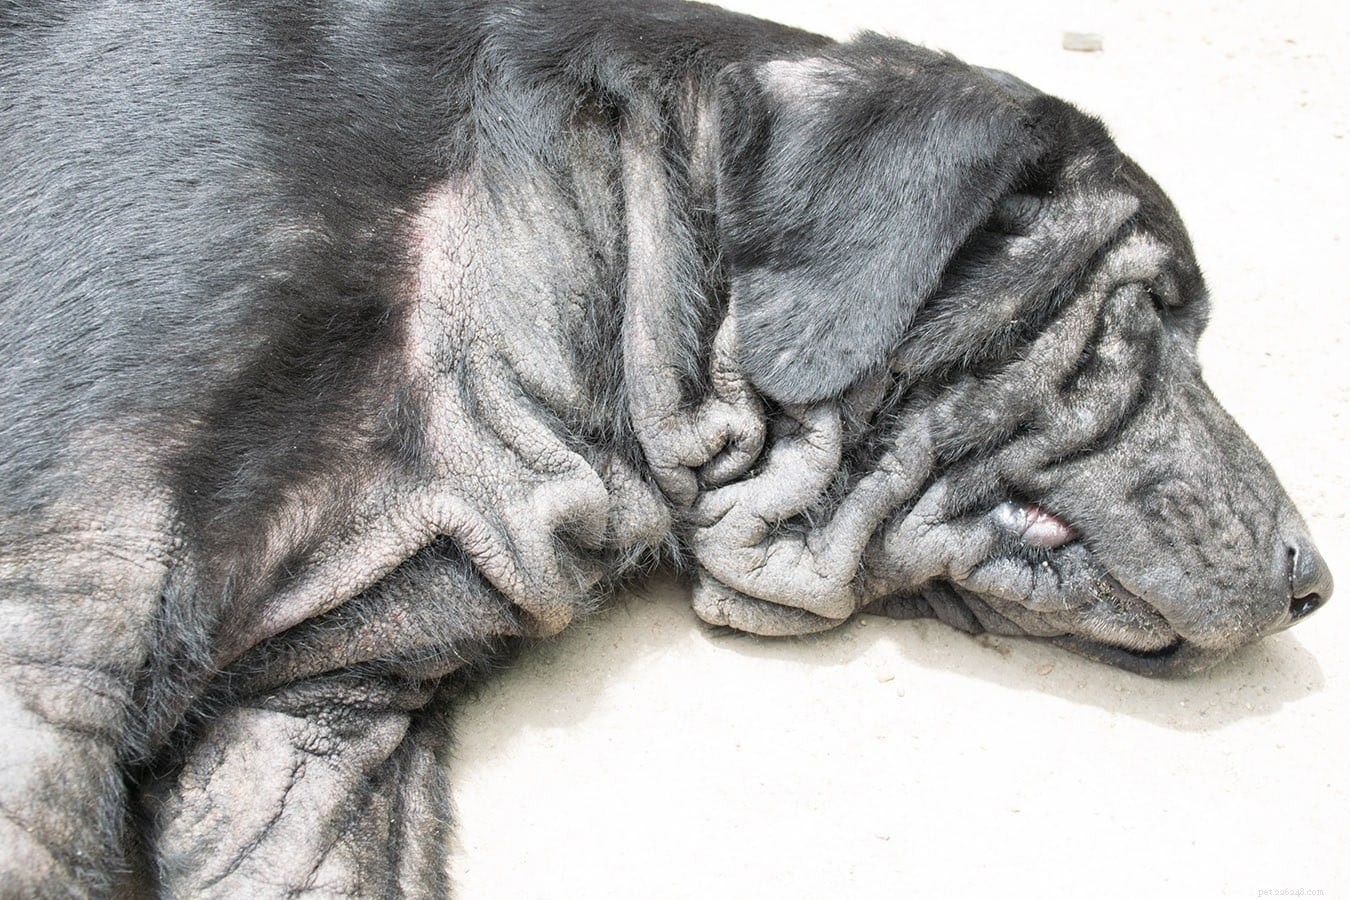 Malassezia-dermatit (svampinfektioner) hos hundar:orsaker, behandlingar, förebyggande